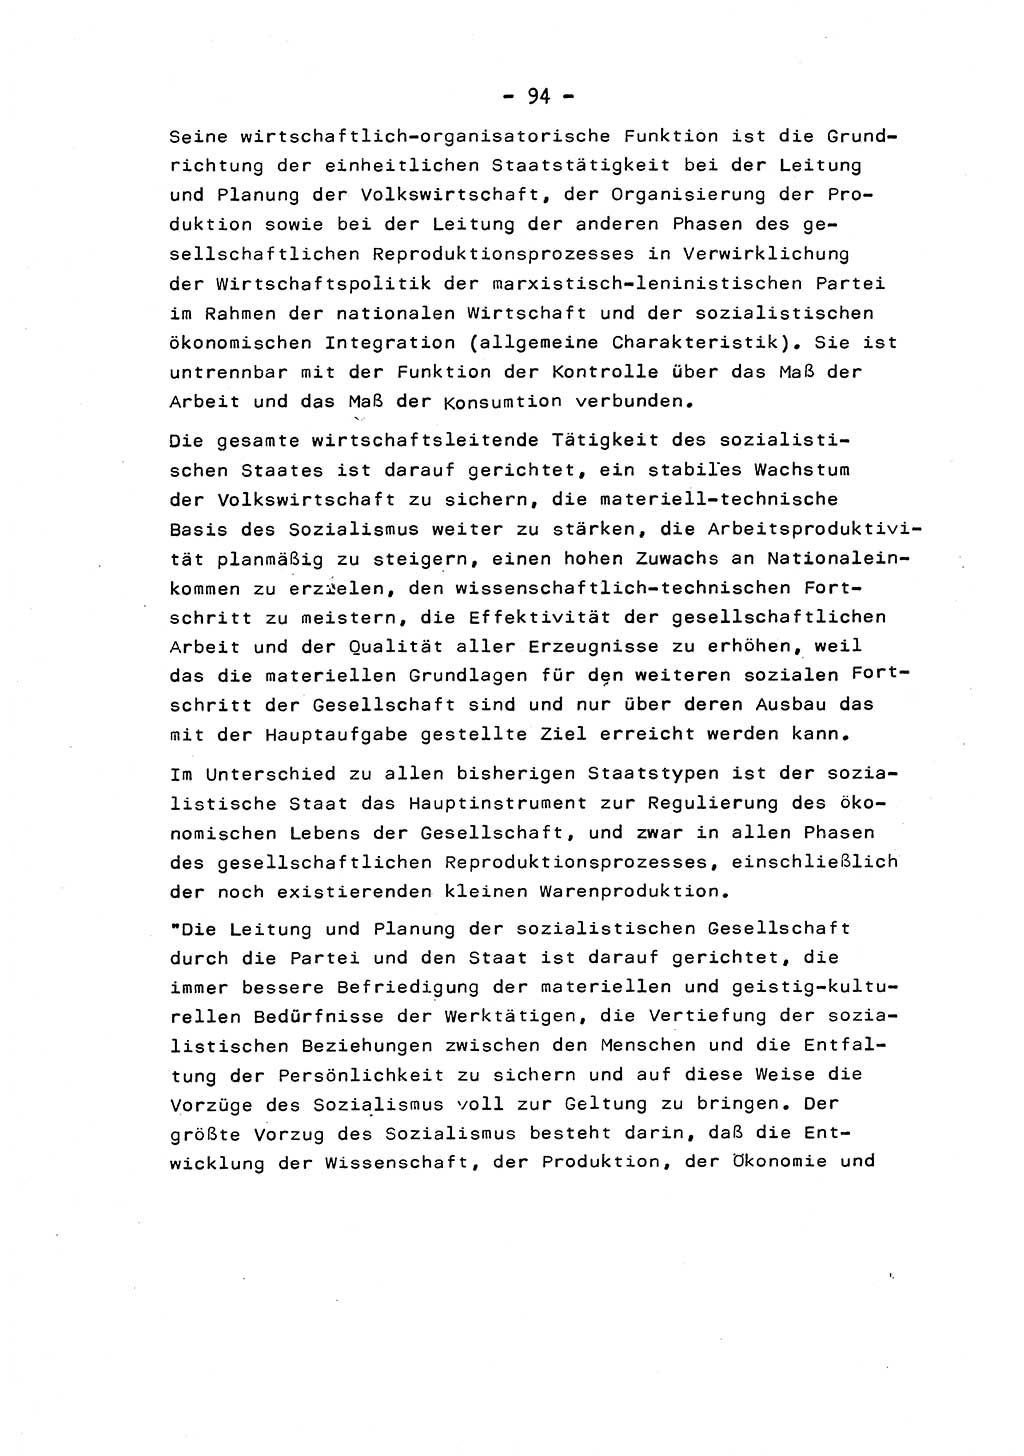 Marxistisch-leninistische Staats- und Rechtstheorie [Deutsche Demokratische Republik (DDR)] 1975, Seite 94 (ML St.-R.-Th. DDR 1975, S. 94)